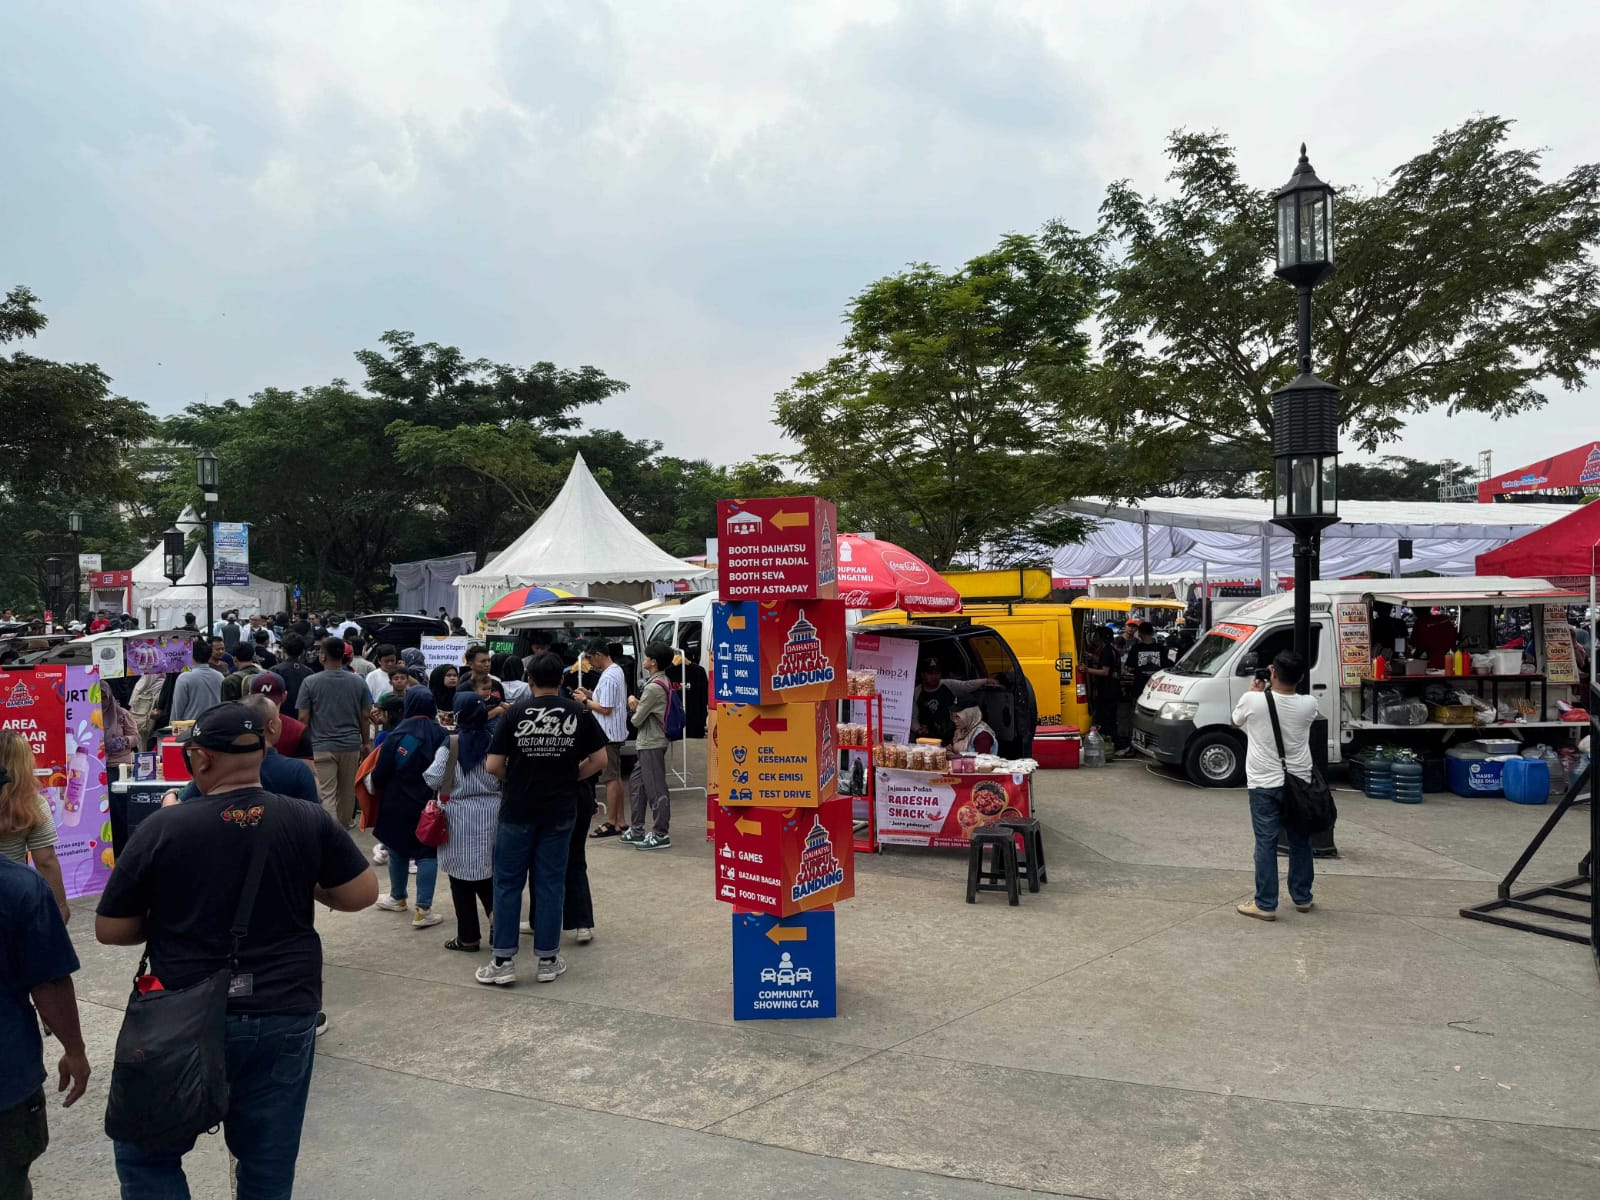 Daihatsu Kumpul Sahabat Bandung Berlangsung Seru, Diramaikan Bazar hingga Konser Musik